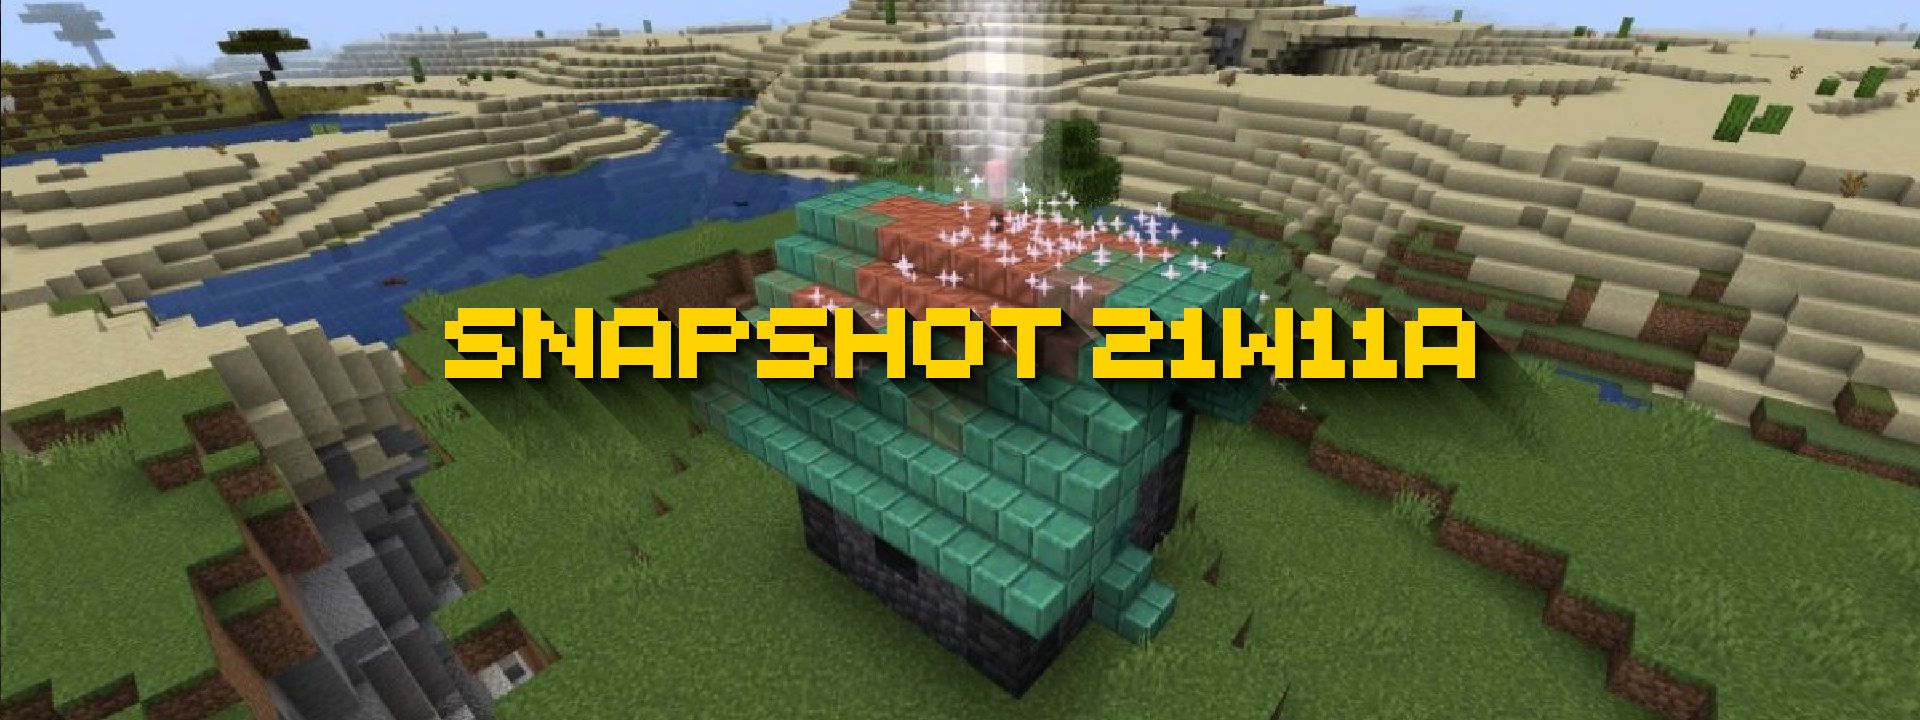 Minecraft snapshot 24w11a